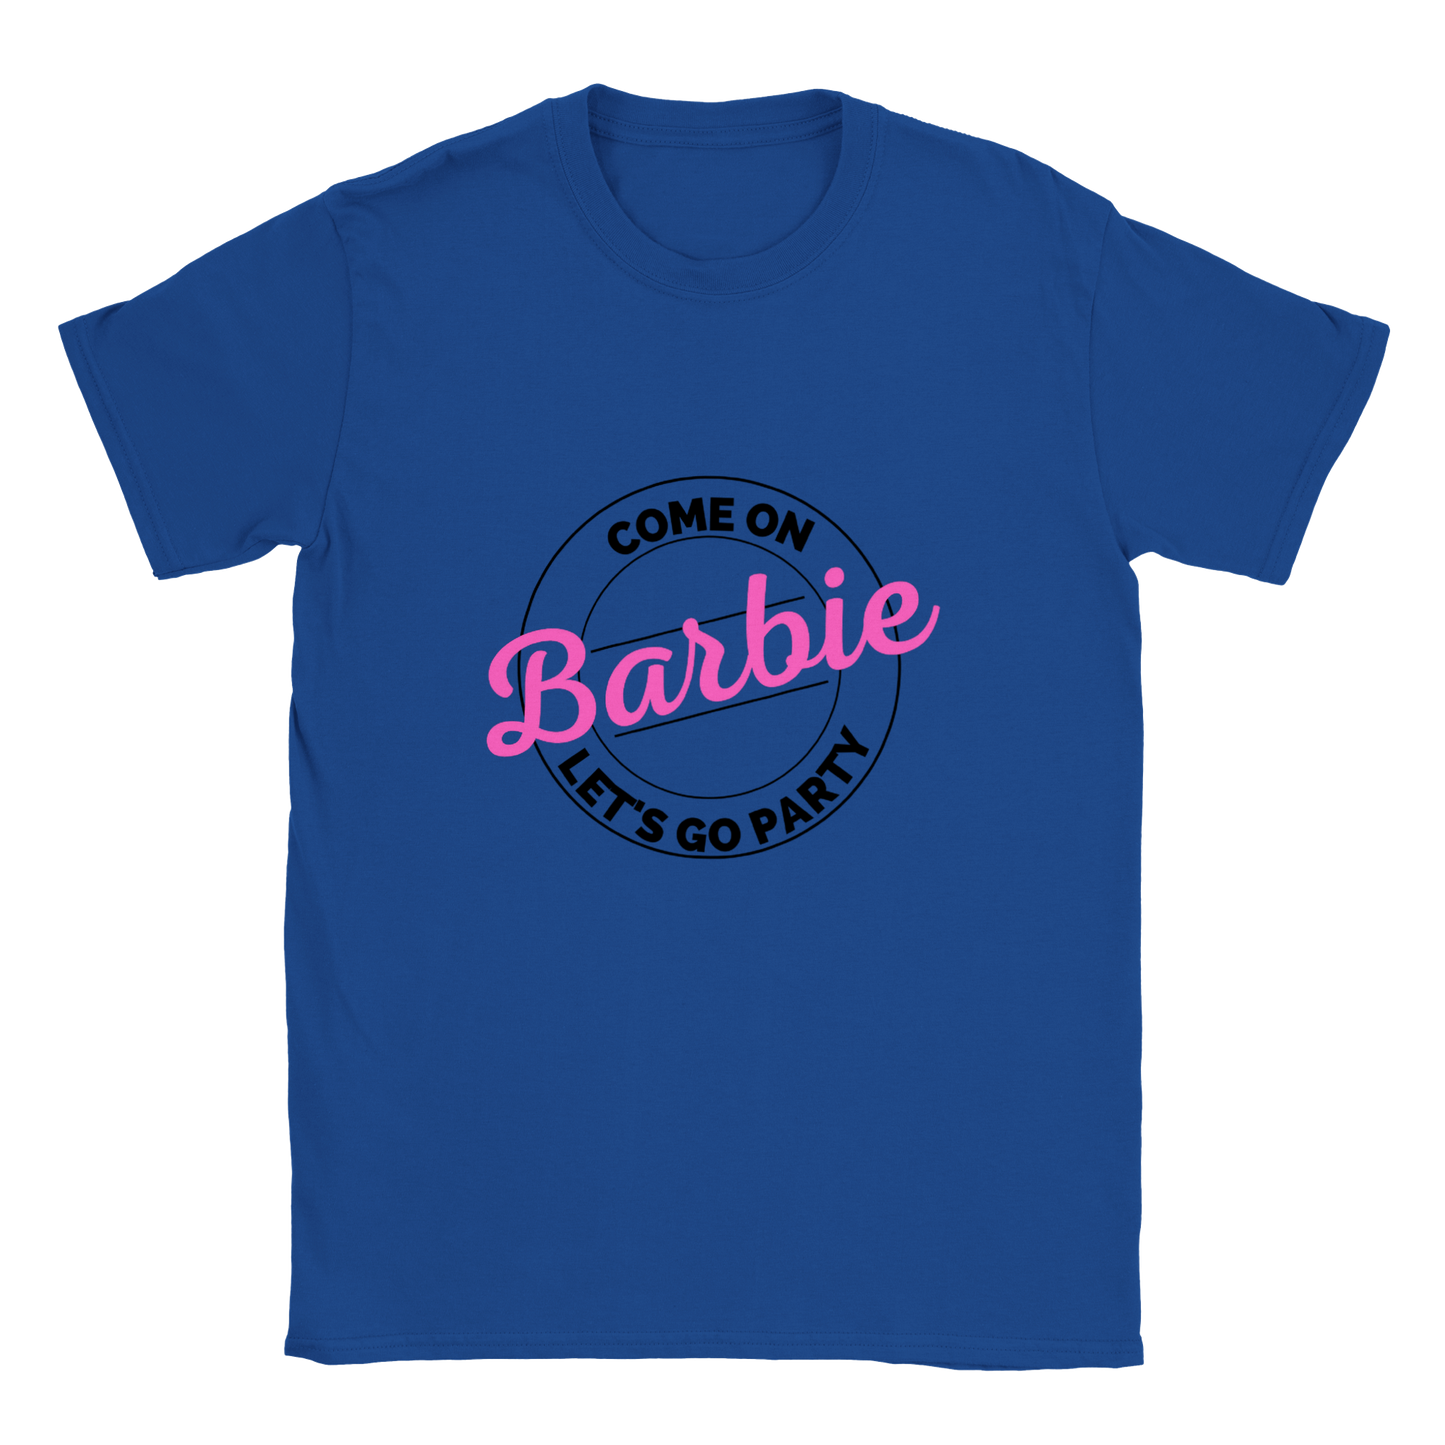 Cmon Barbie Lets Go Party Come on Barbie - Classic Unisex Crewneck T-shirt